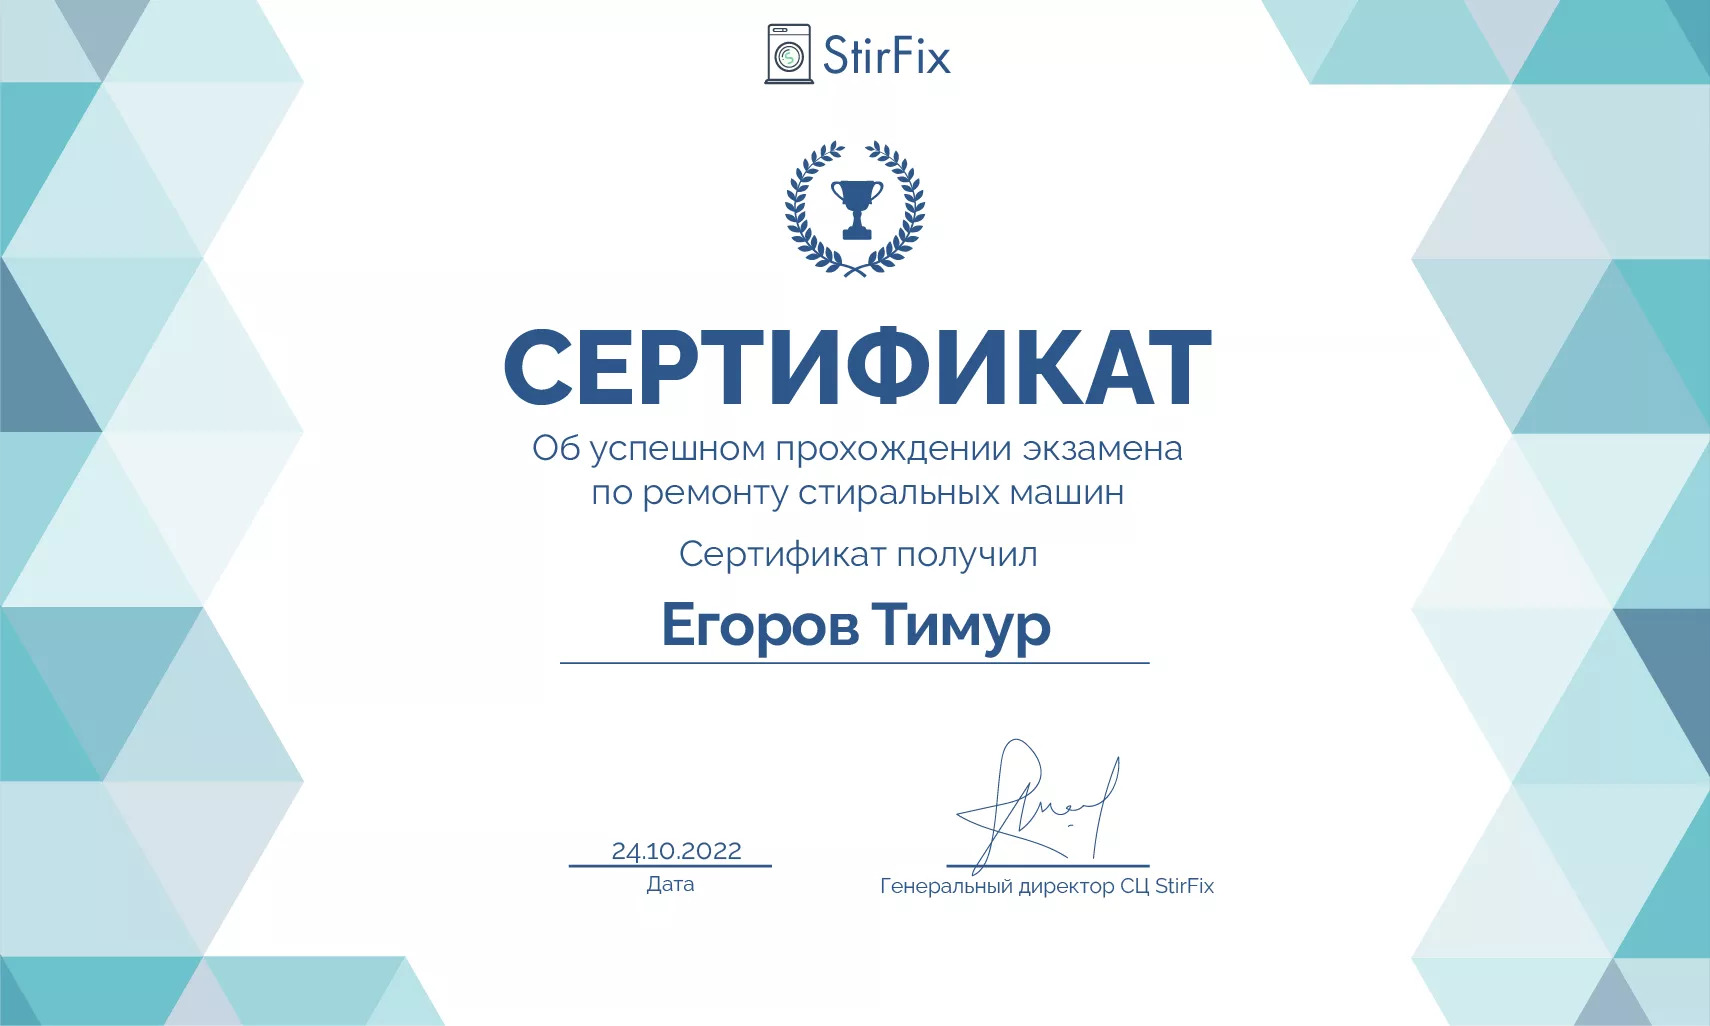 Егоров Тимур сертификат мастера по ремонту стиральных машин